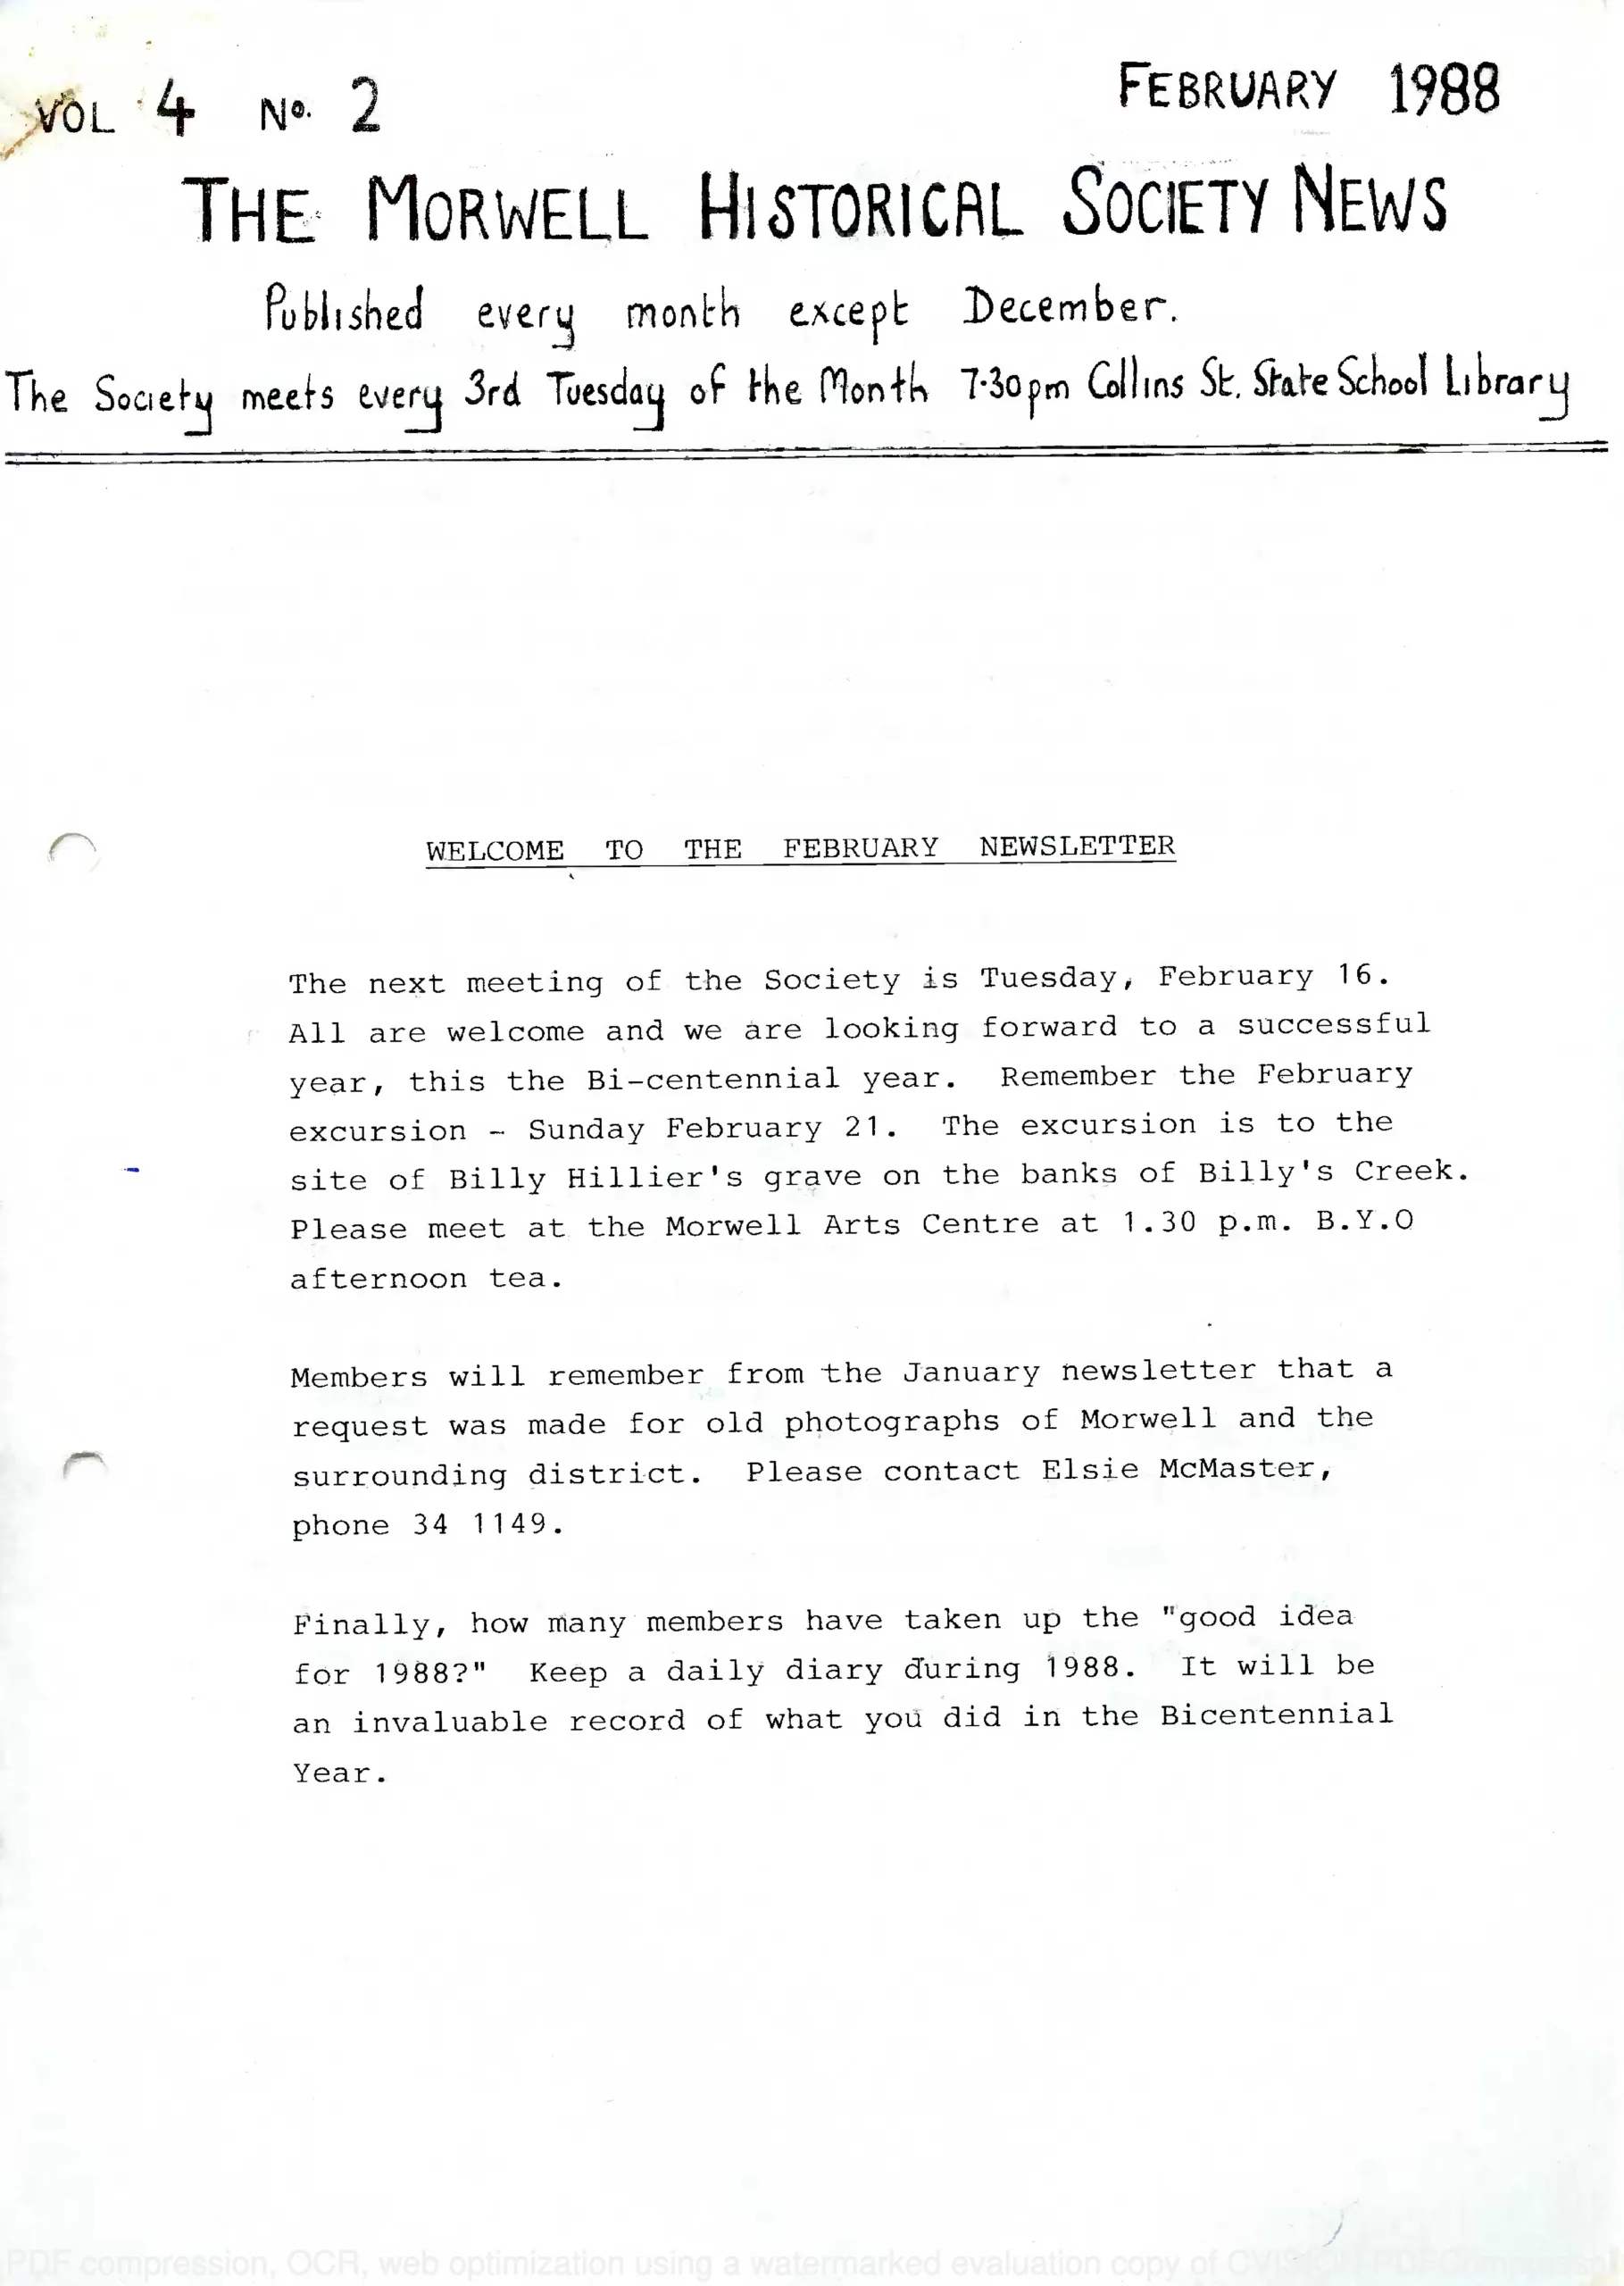 Newsletter February 1988